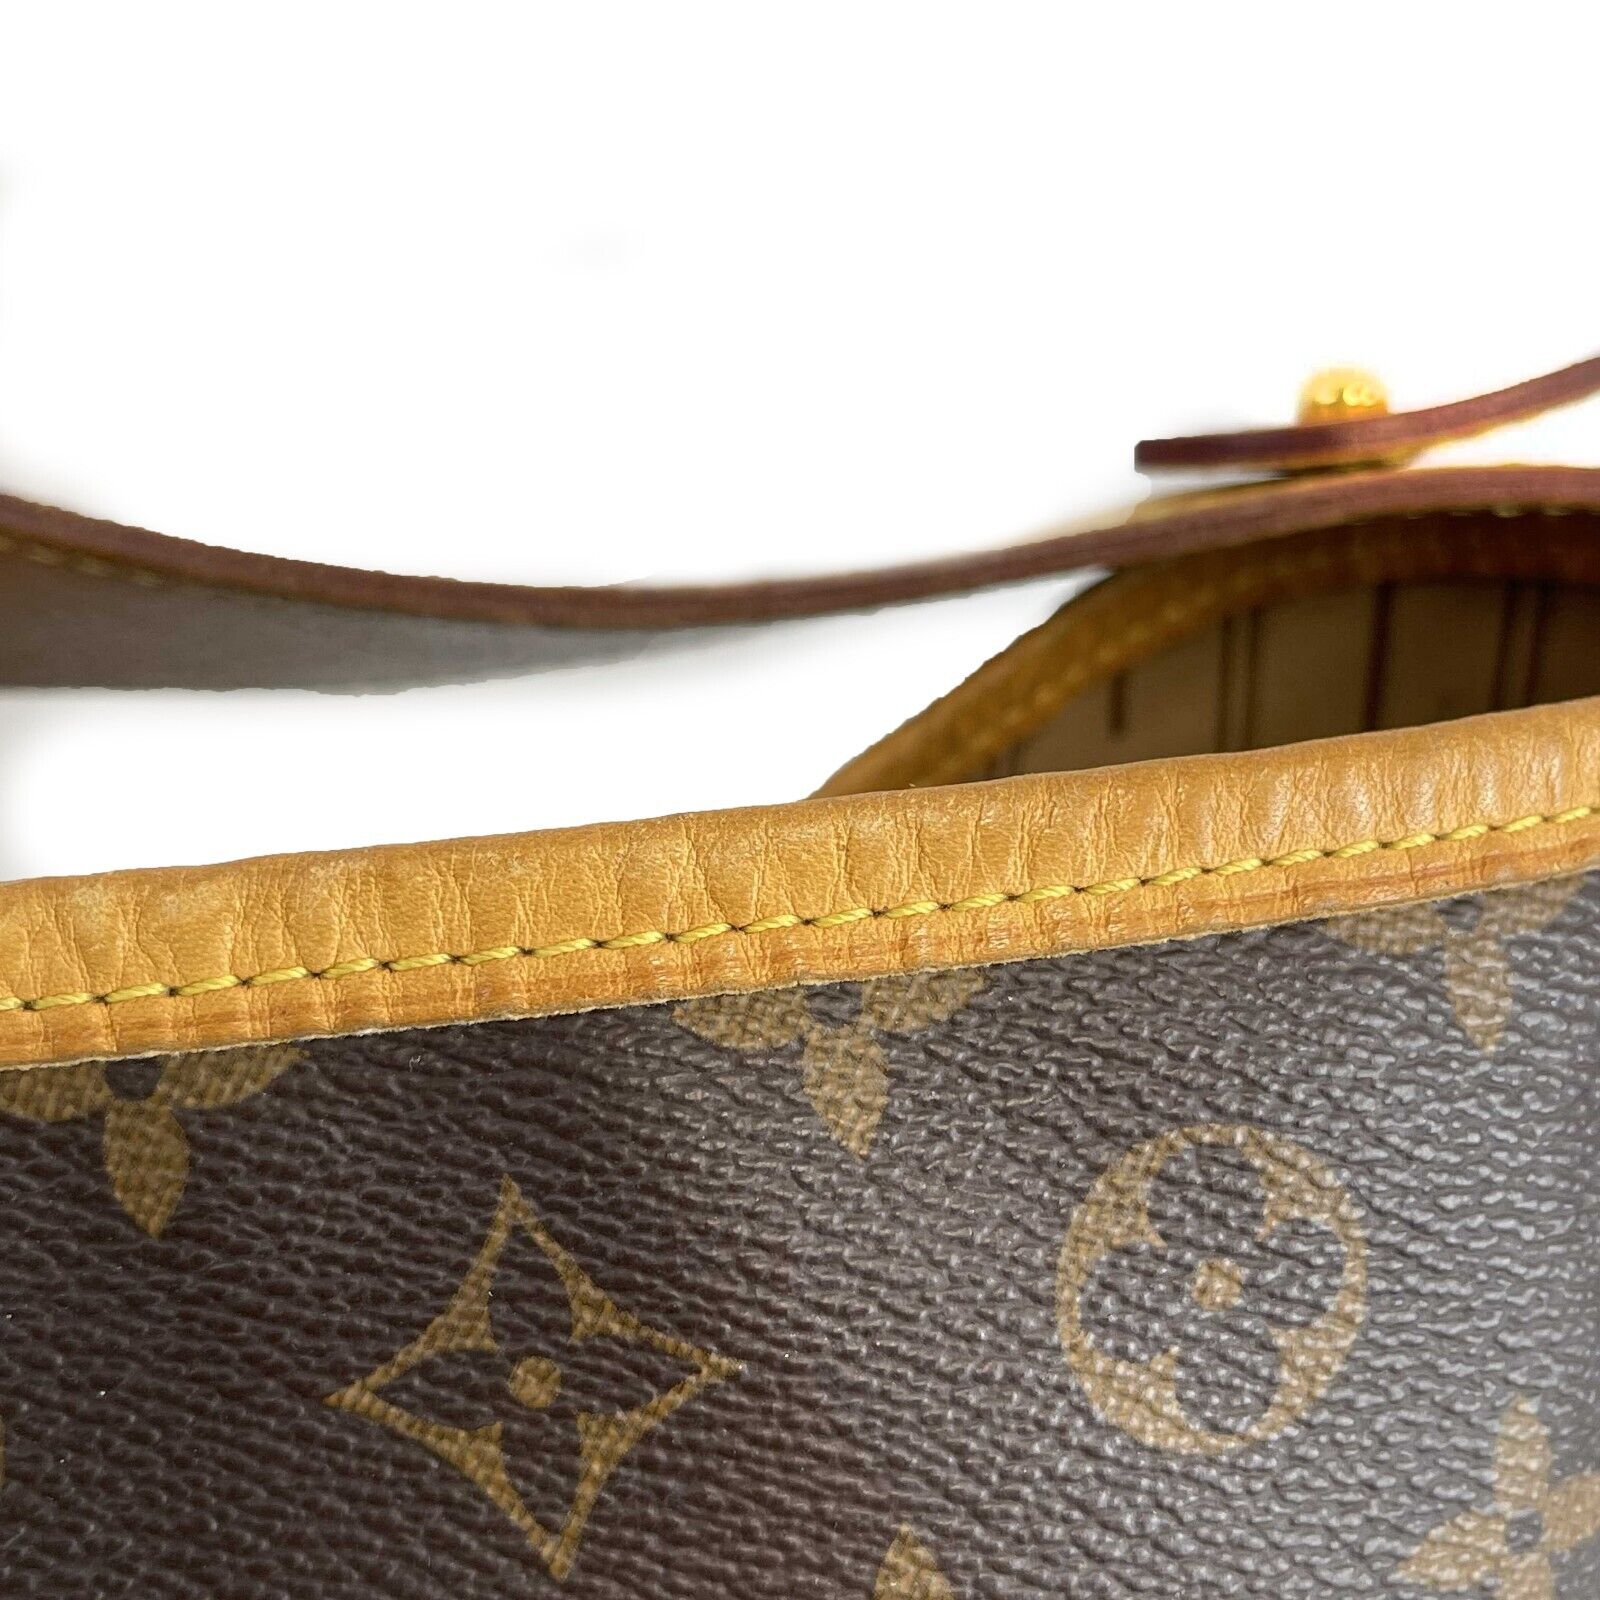 Louis Vuitton - Monogram Canvas Delightful PM - Brown Shoulder Bag